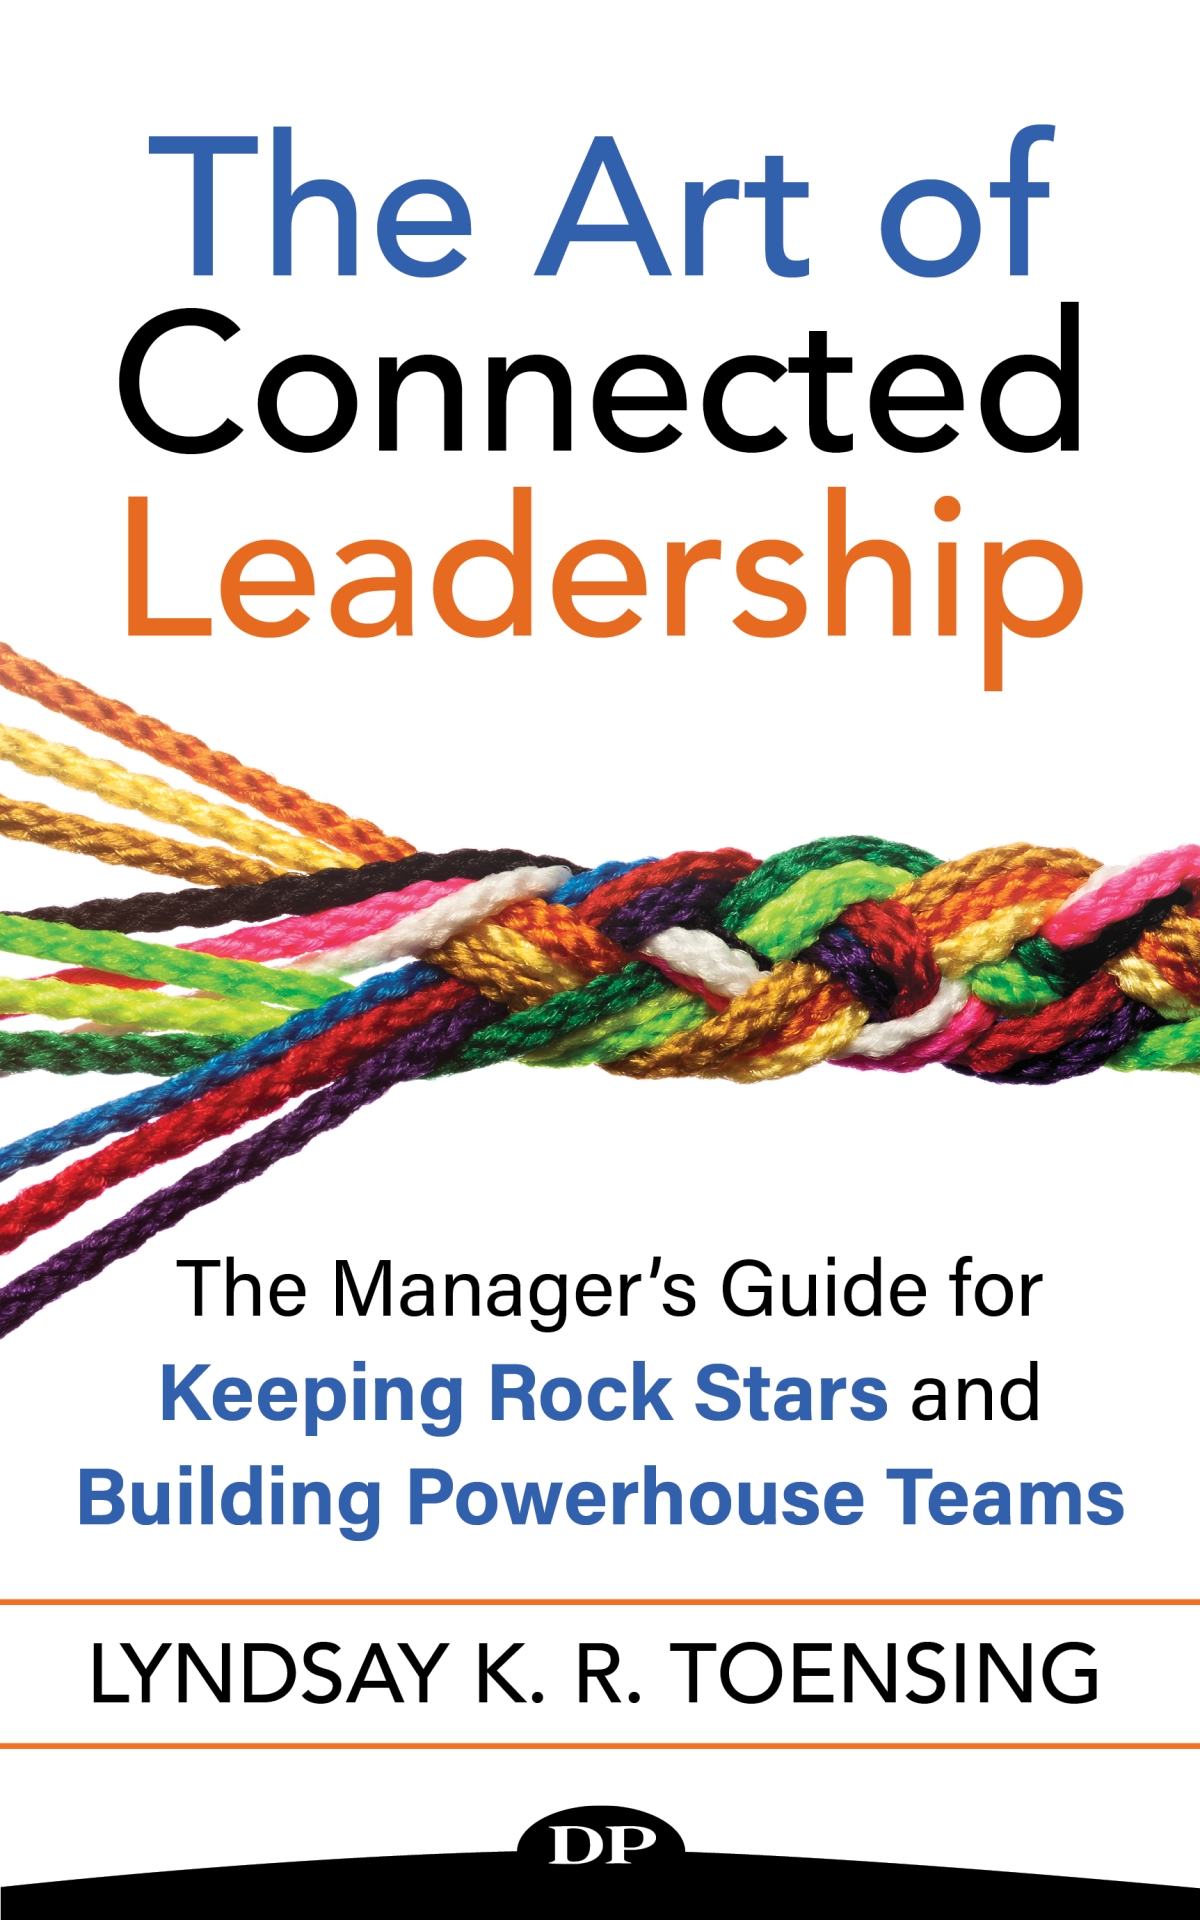 The Art of Connected Leadership by Lyndsay K. R. Toensing